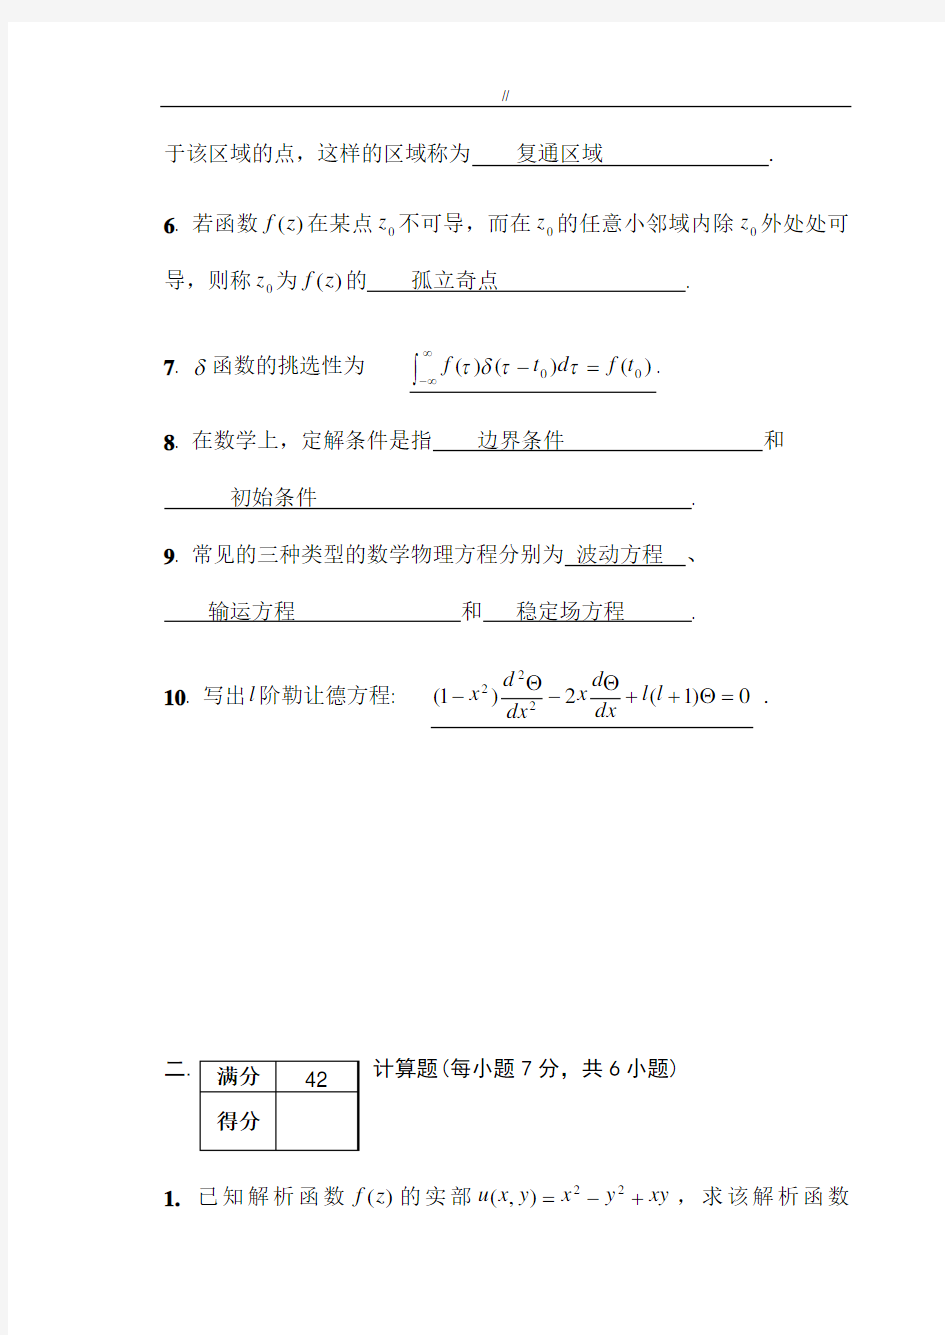 数学物理方法期末考试规范标准答案